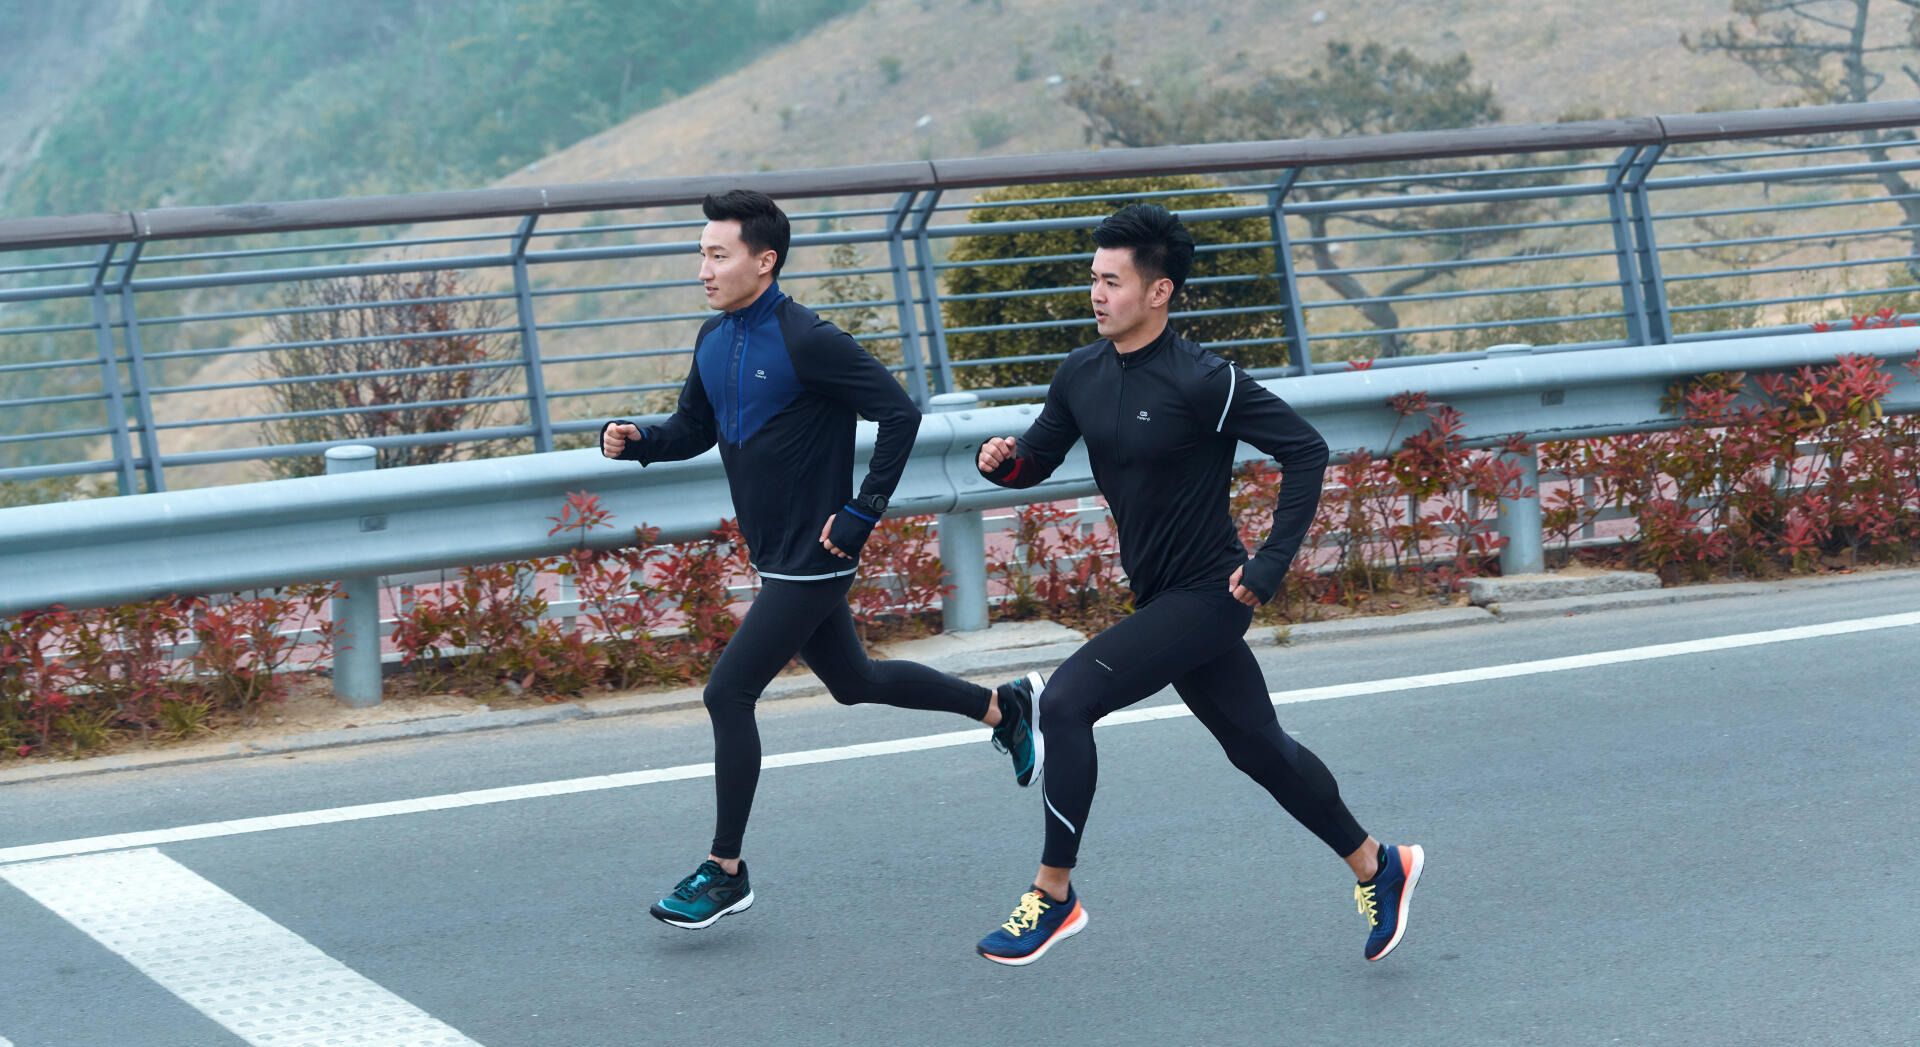 準備馬拉松 間歇訓練真的是卡關萬靈丹嗎